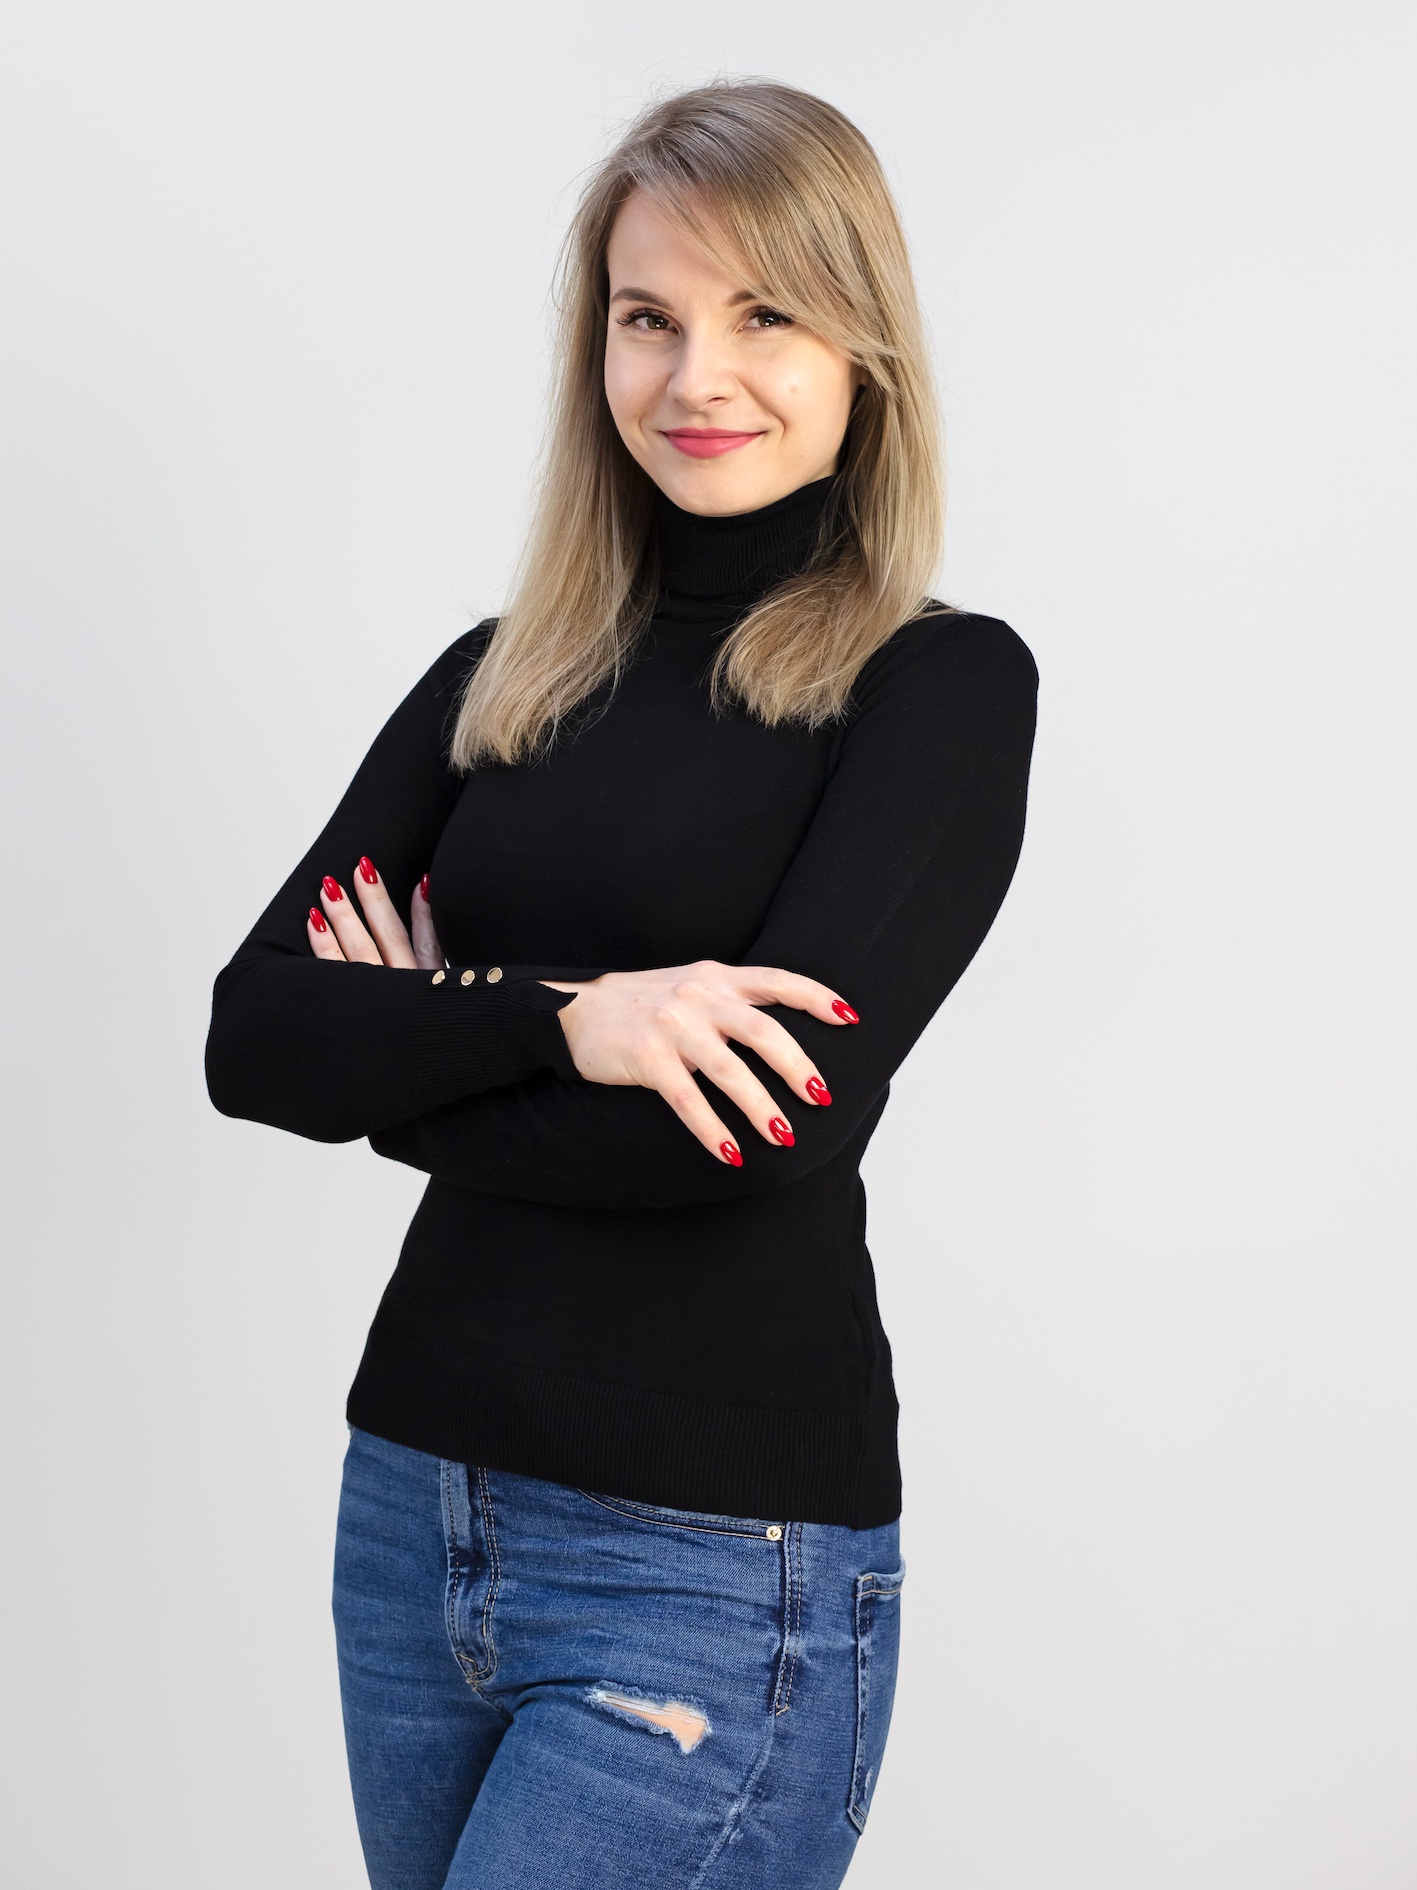 Katarzyna Kuziemska